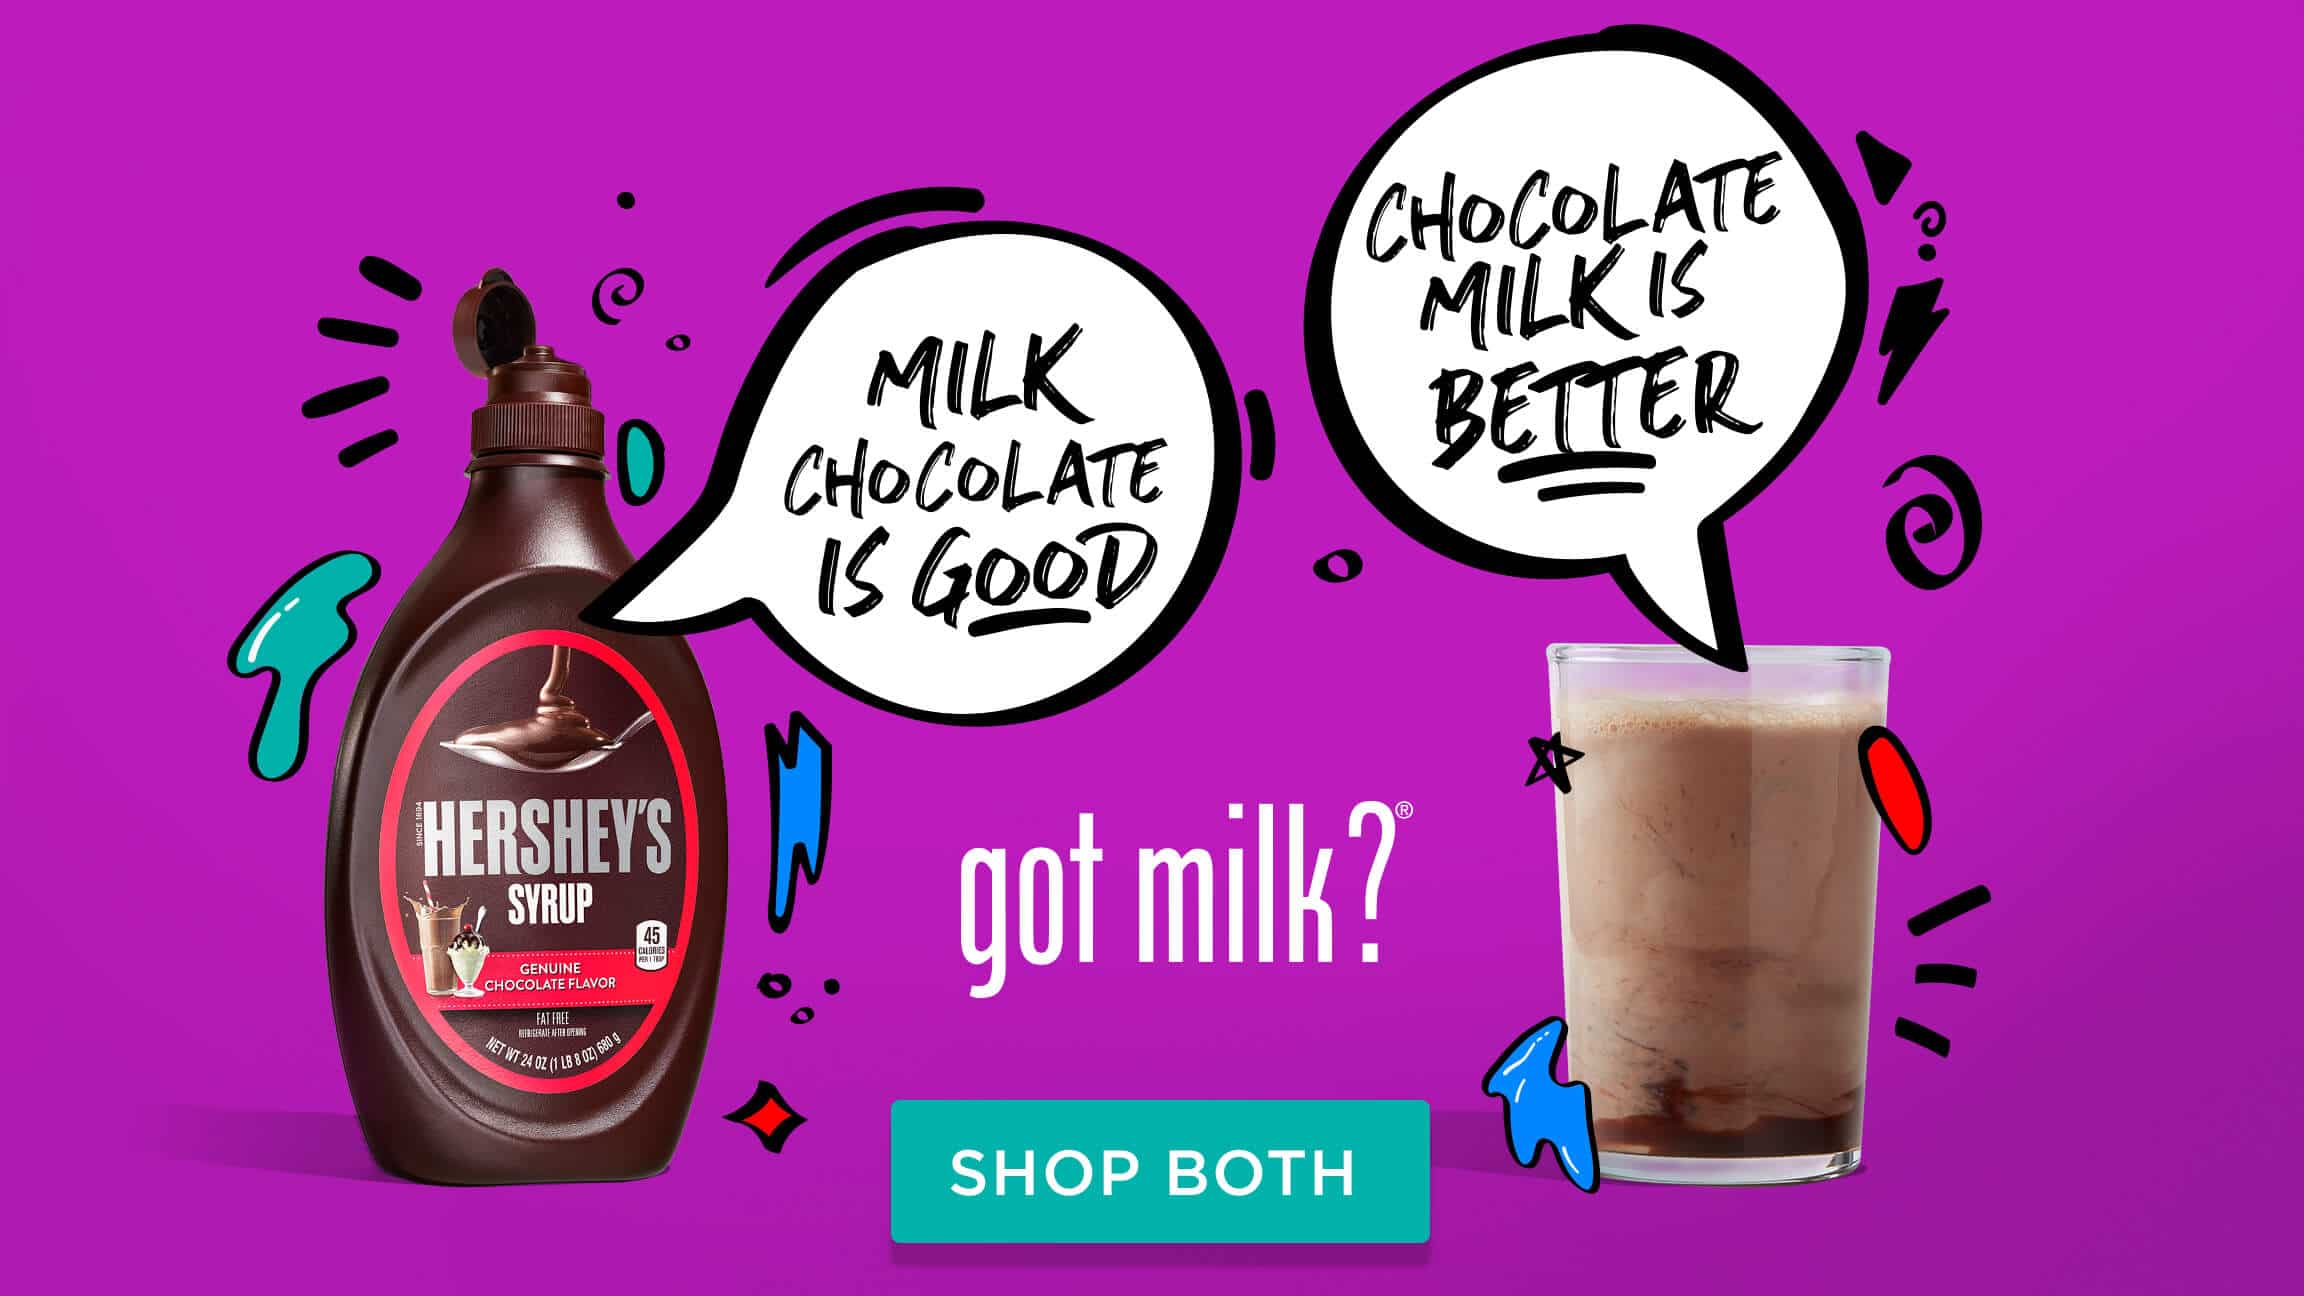 Got milk advertisement for chocolate milk